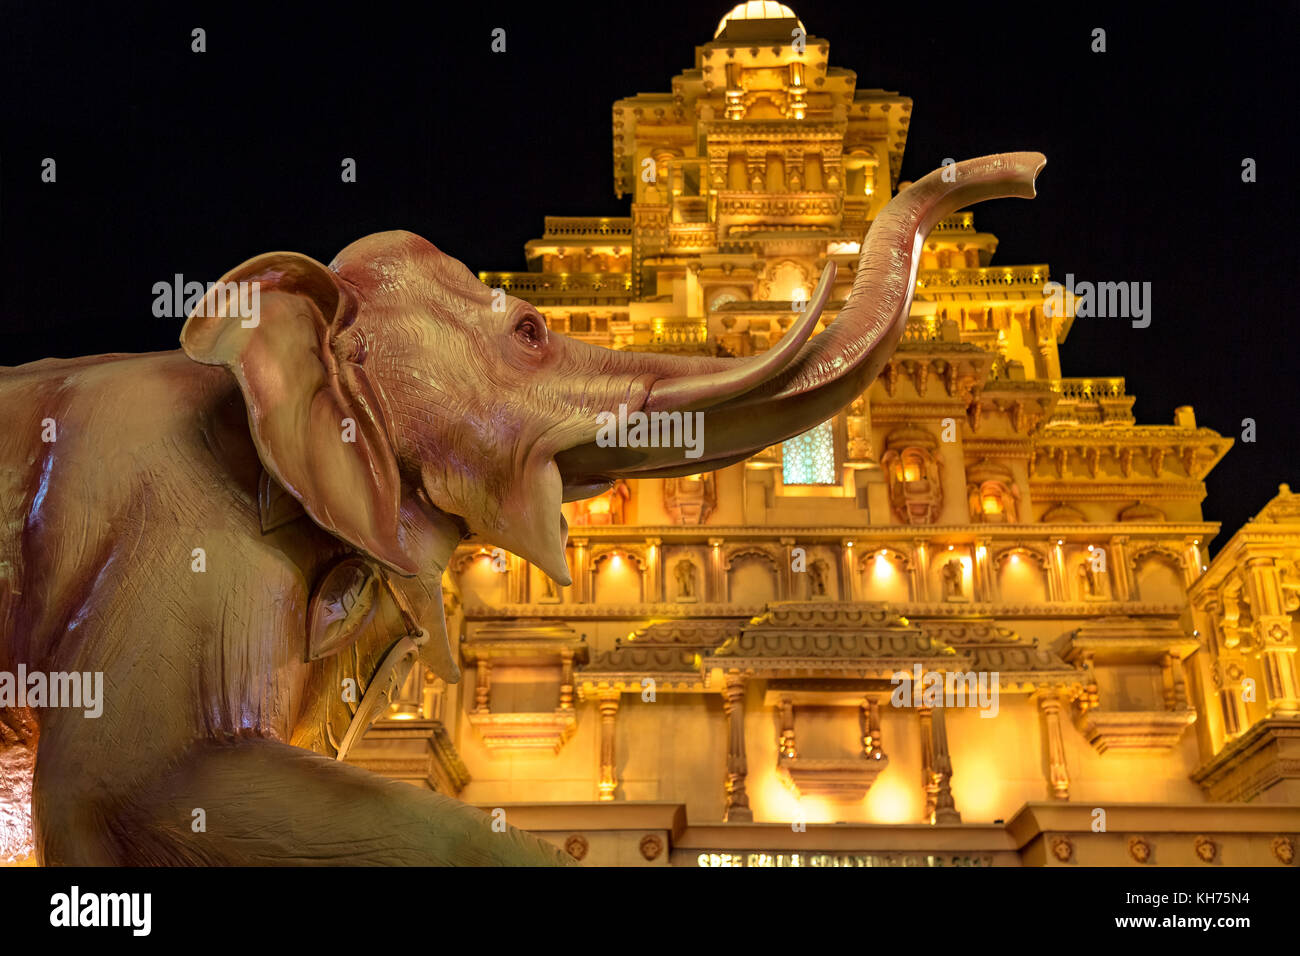 Kreative Durga Tempel gebaut eine indische Royal Palace zu einem Durga Puja in North Kolkata zu replizieren. Stockfoto